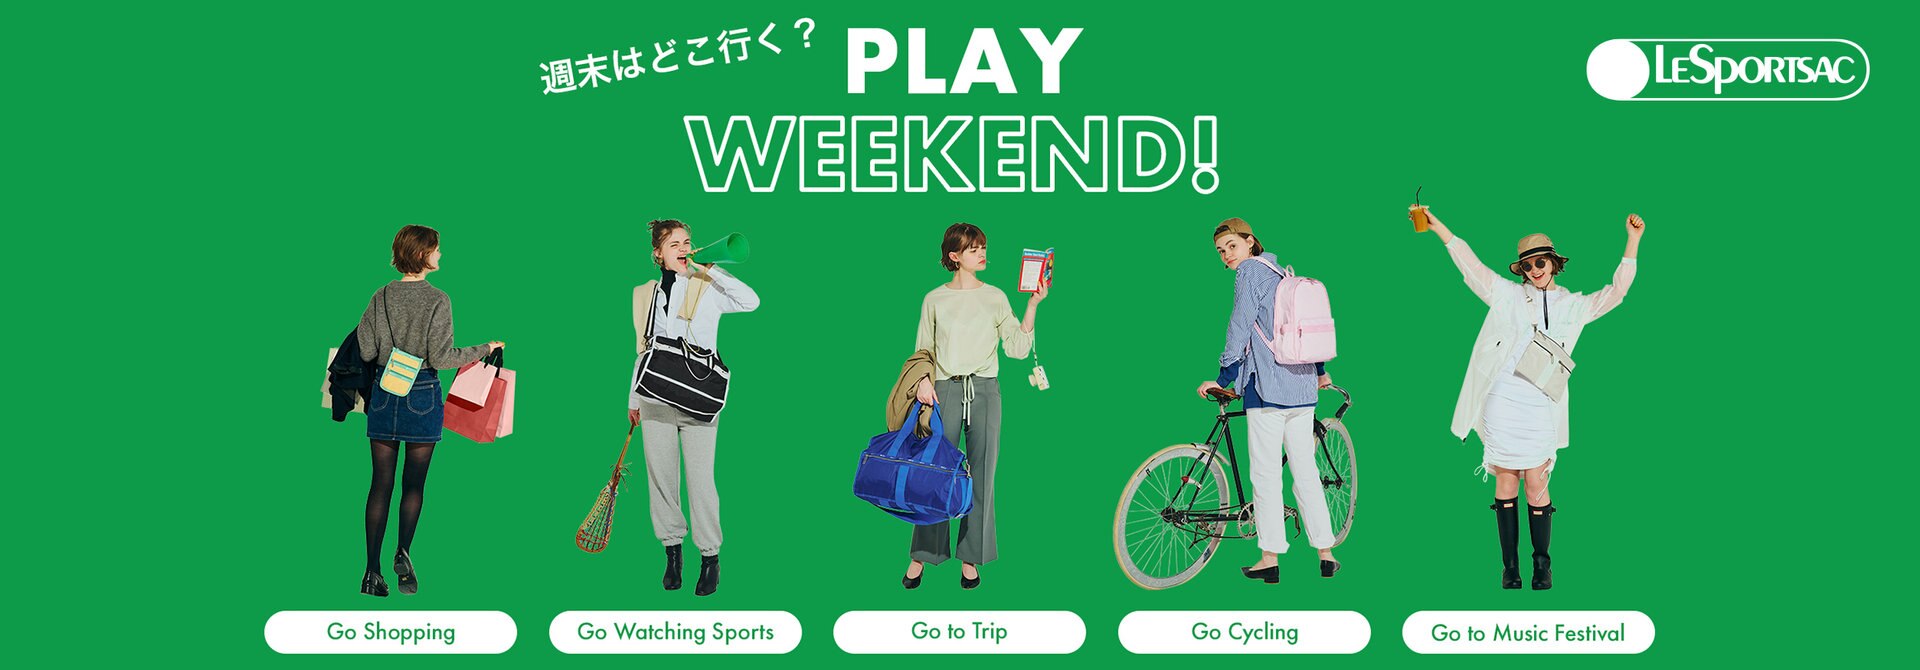 旅行やスポーツ観戦、サイクリングなど、アクティブな週末を楽しむ相棒バッグをご紹介。 たくさんのバリエーションの中からお気に入りを見つけて。